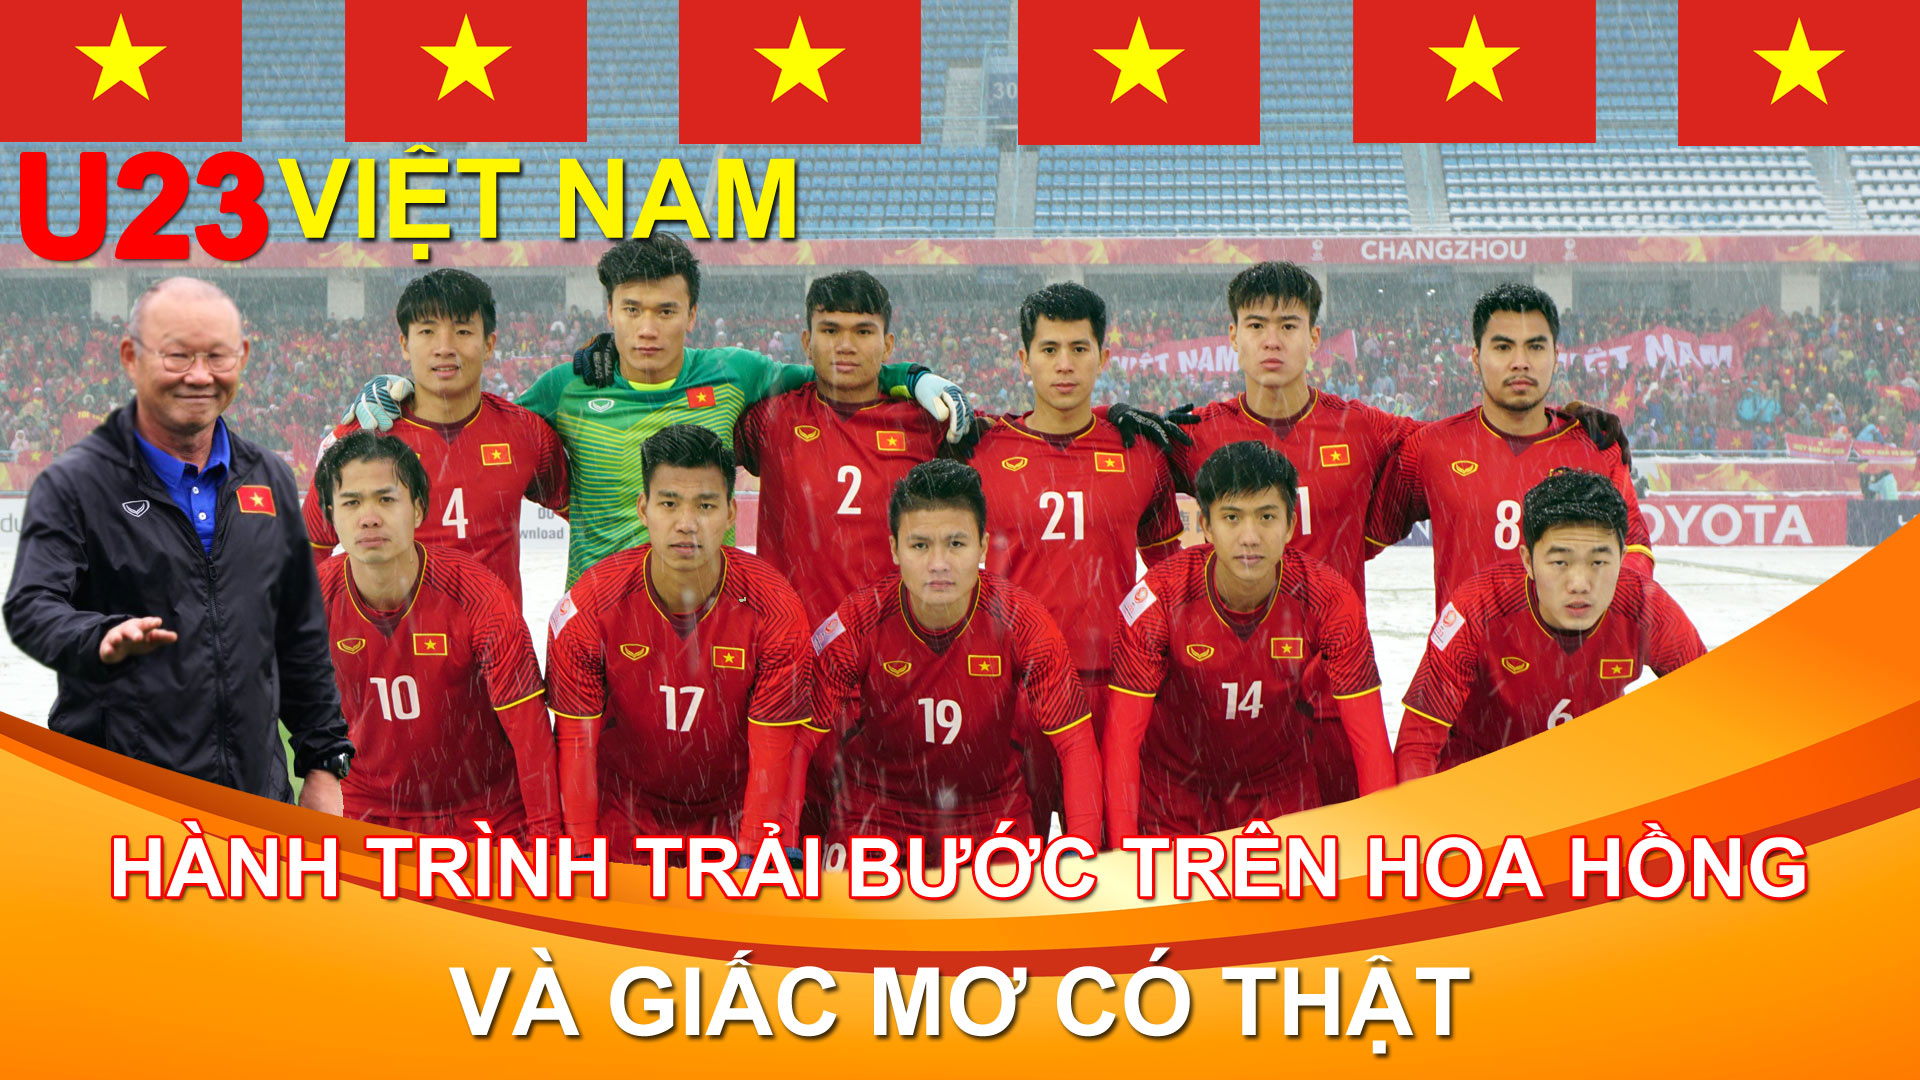 U23 Việt Nam: Hành trình trải bước trên hoa hồng và giấc mơ có thật - 1